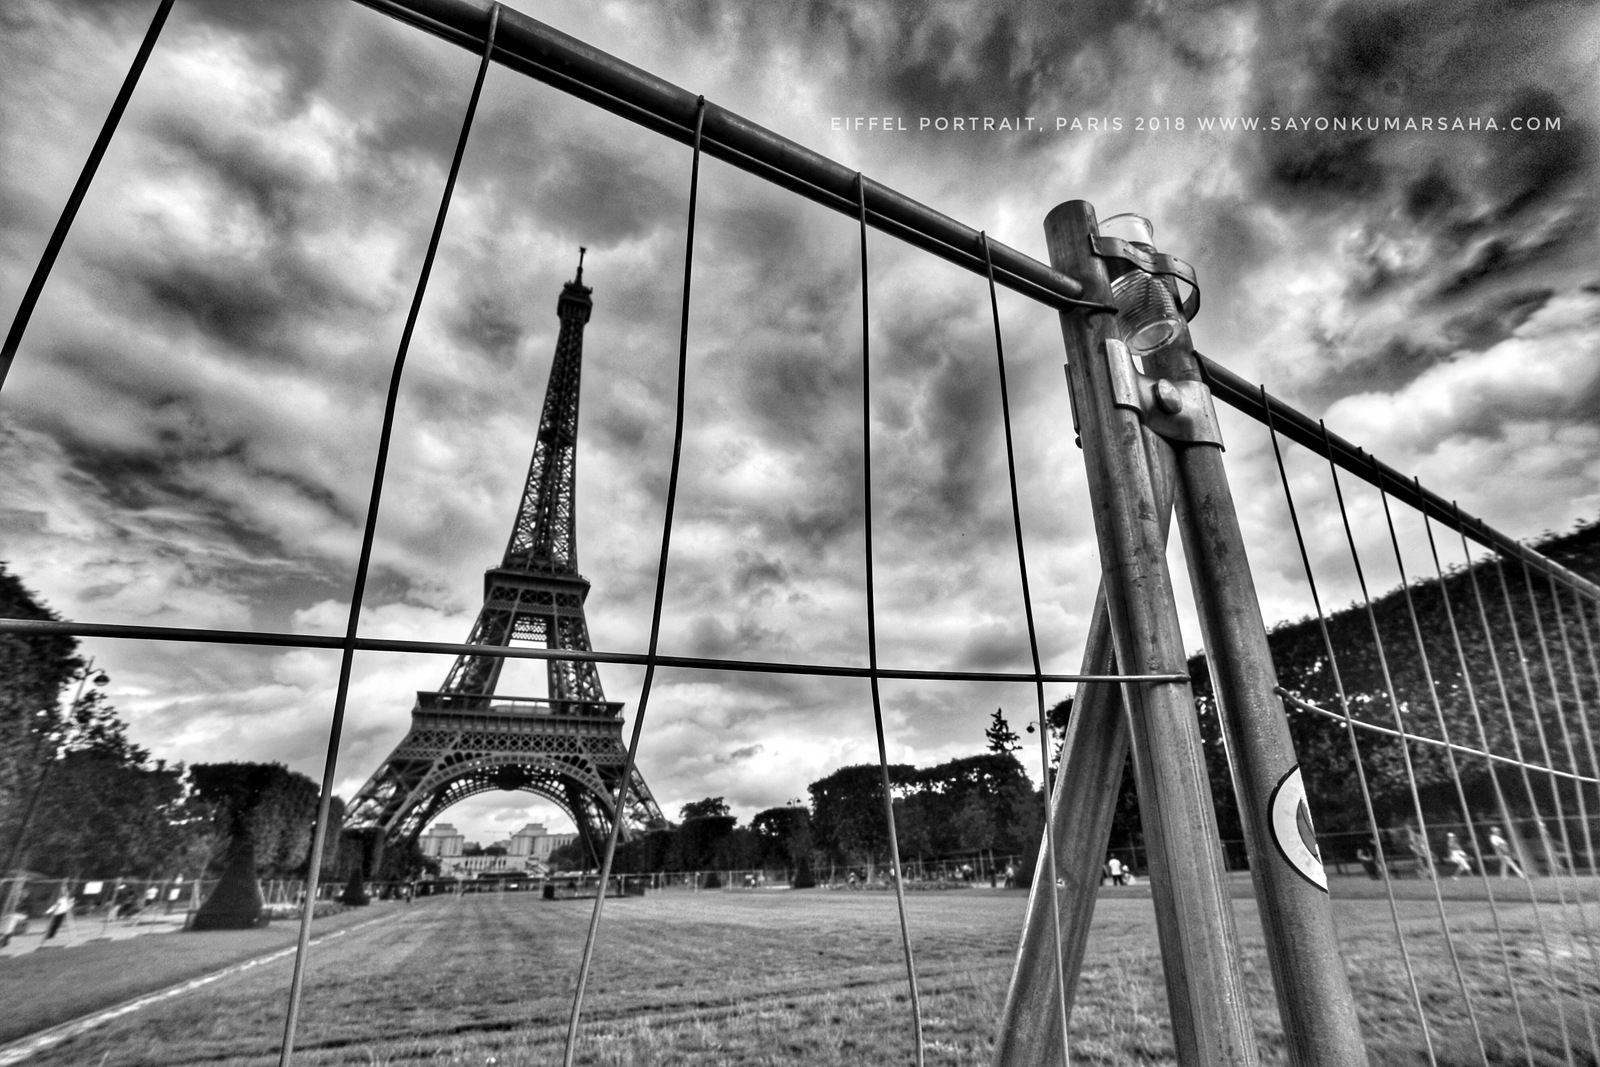 Eiffel Portrait, Paris 2018